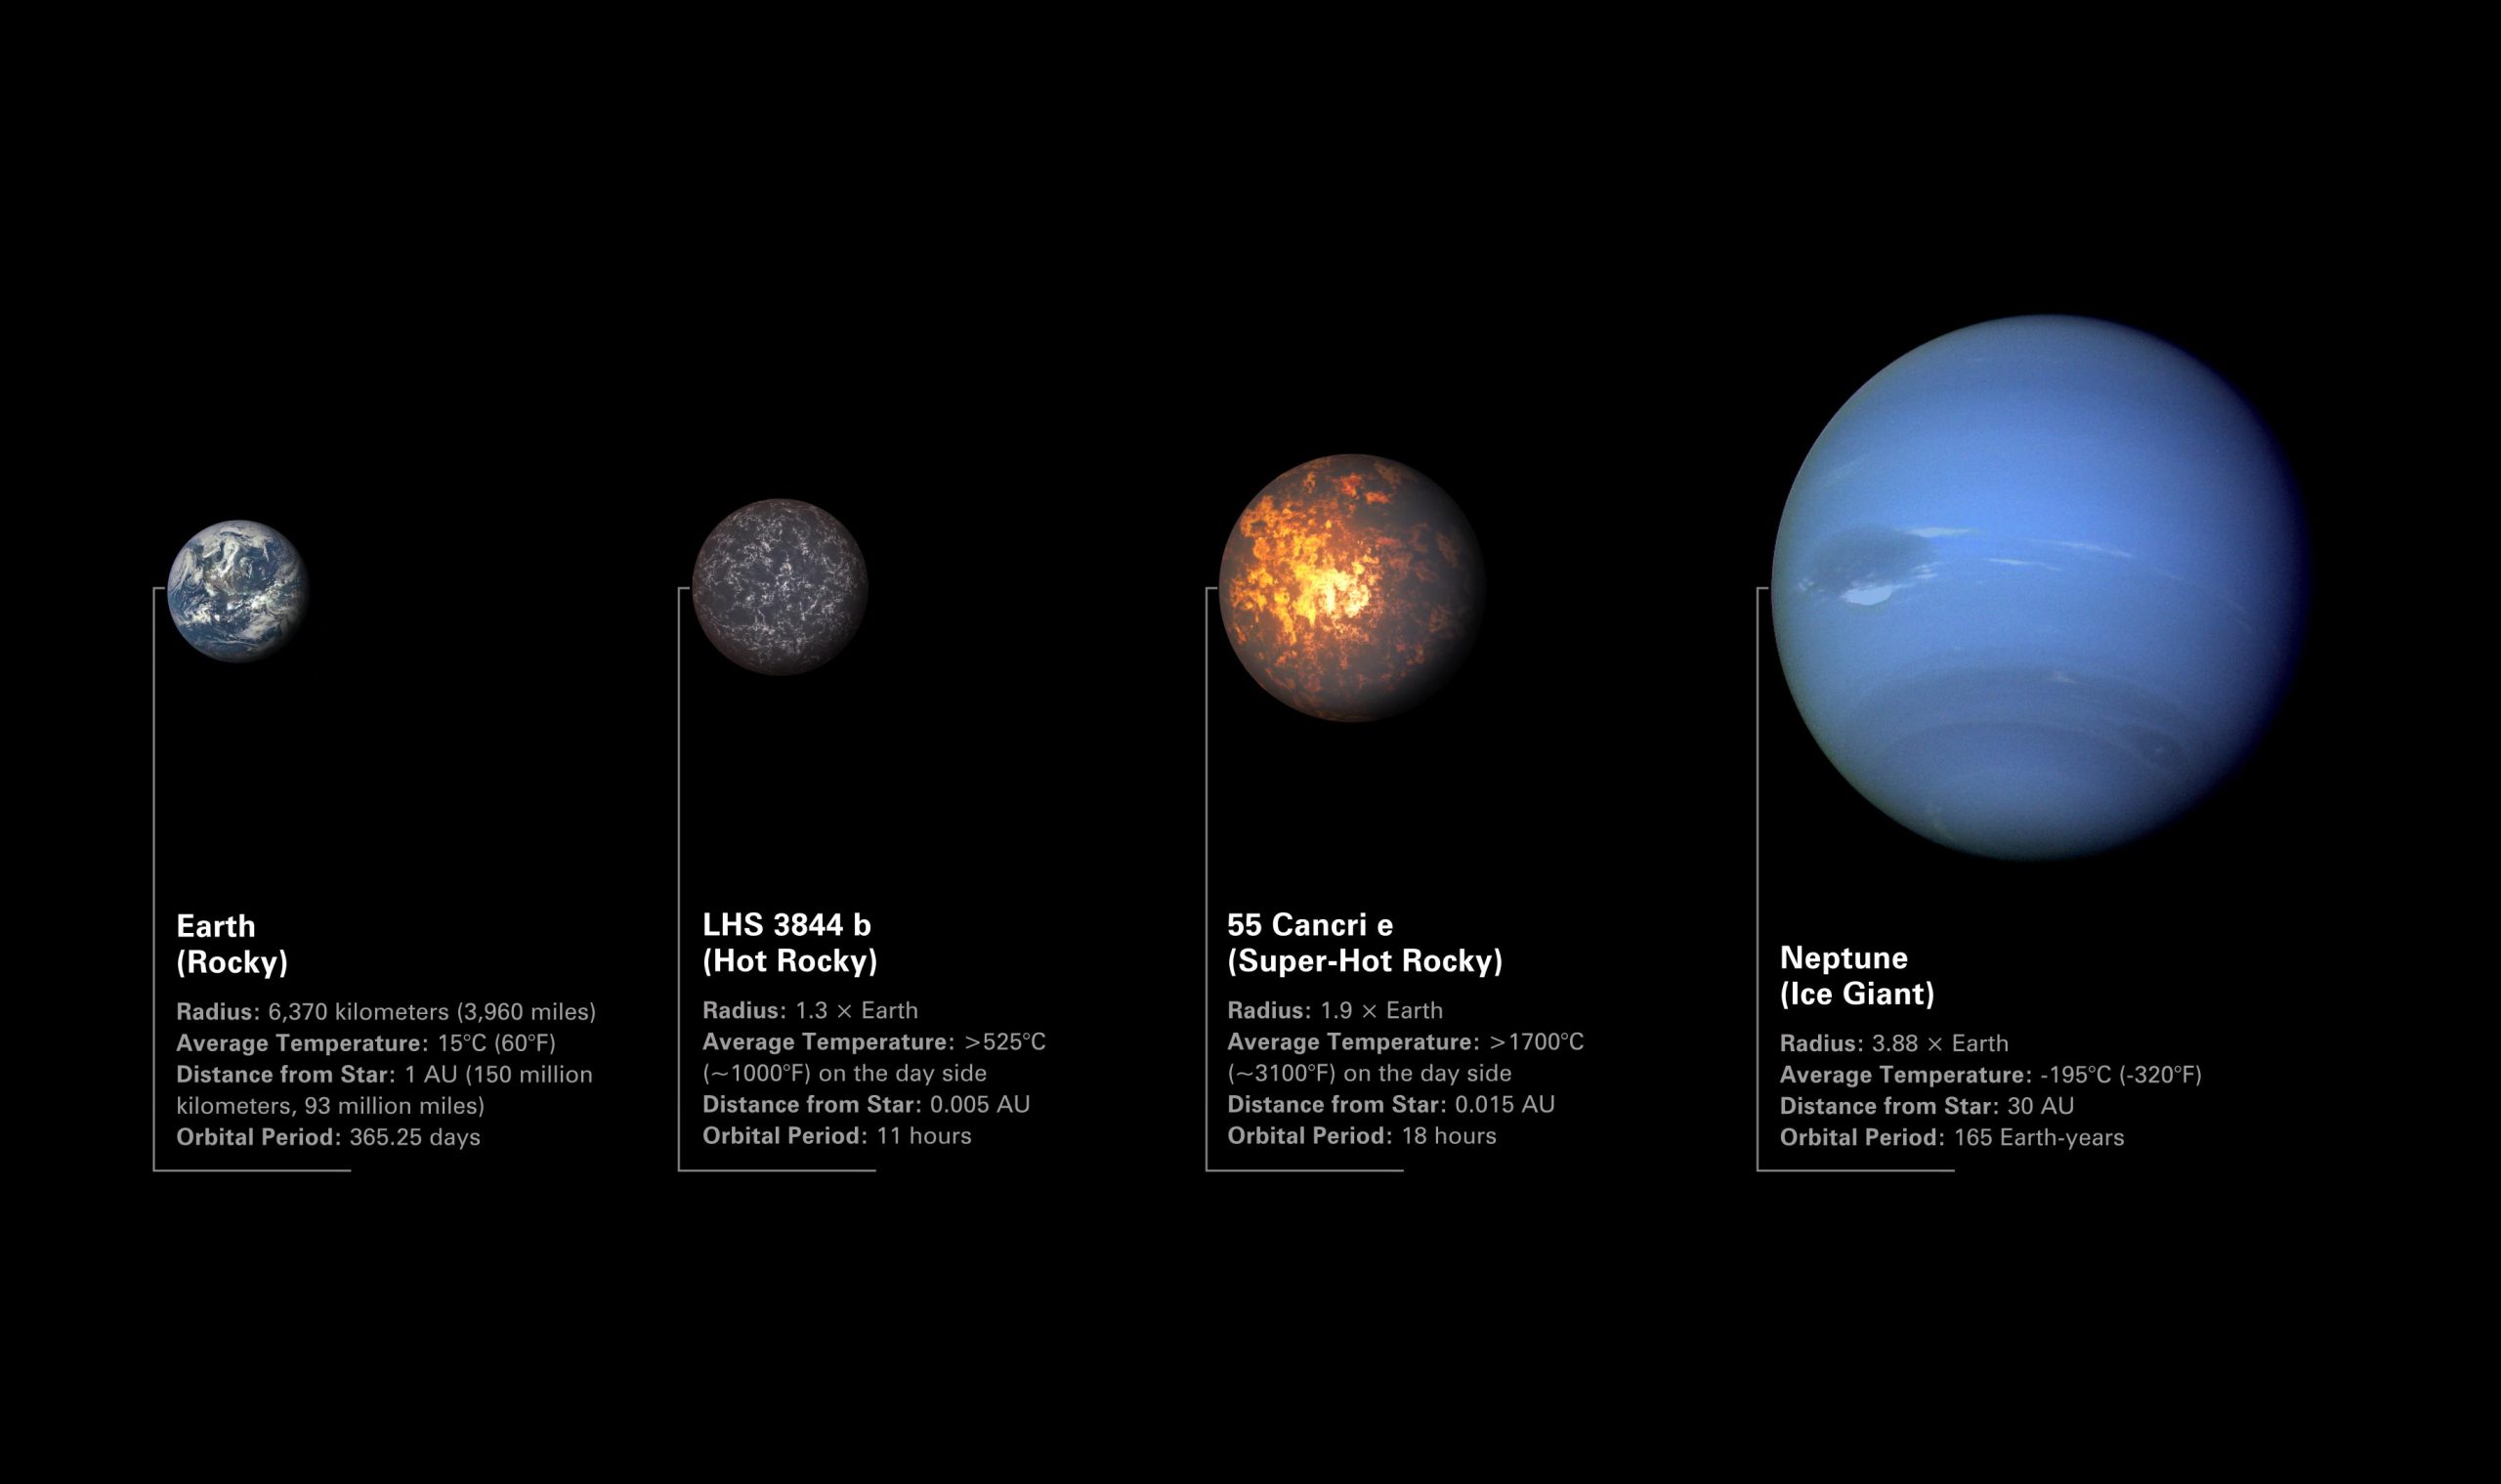 Иллюстрация сравнения скалистых экзопланет LHS 3844 b и 55 Cancri e с Землей и Нептуном.